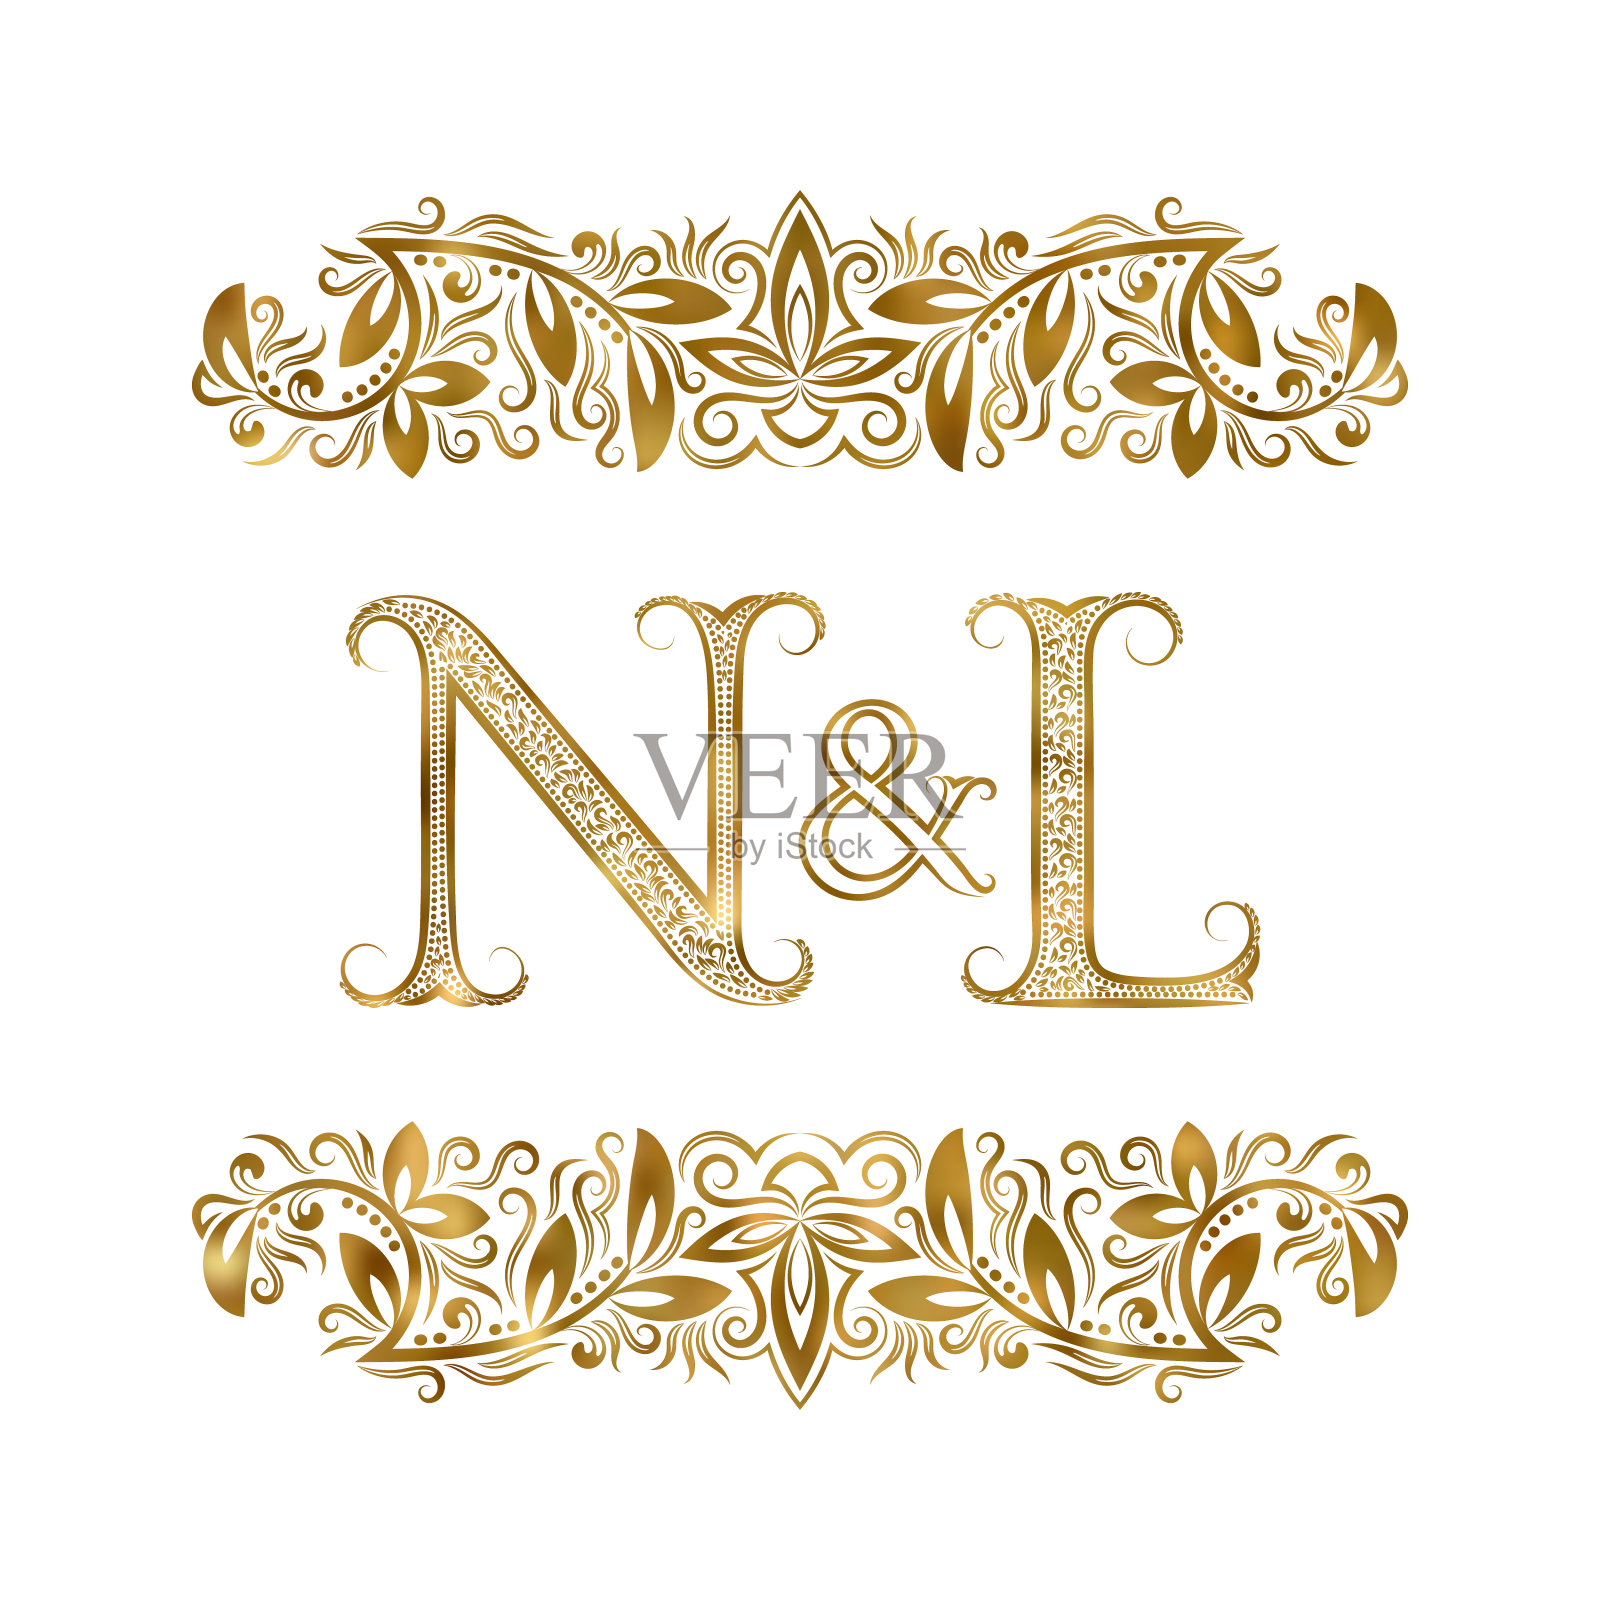 N和L复古的首字母符号。字母周围有装饰元素。皇室风格的婚礼或商业伙伴的字母组合。插画图片素材